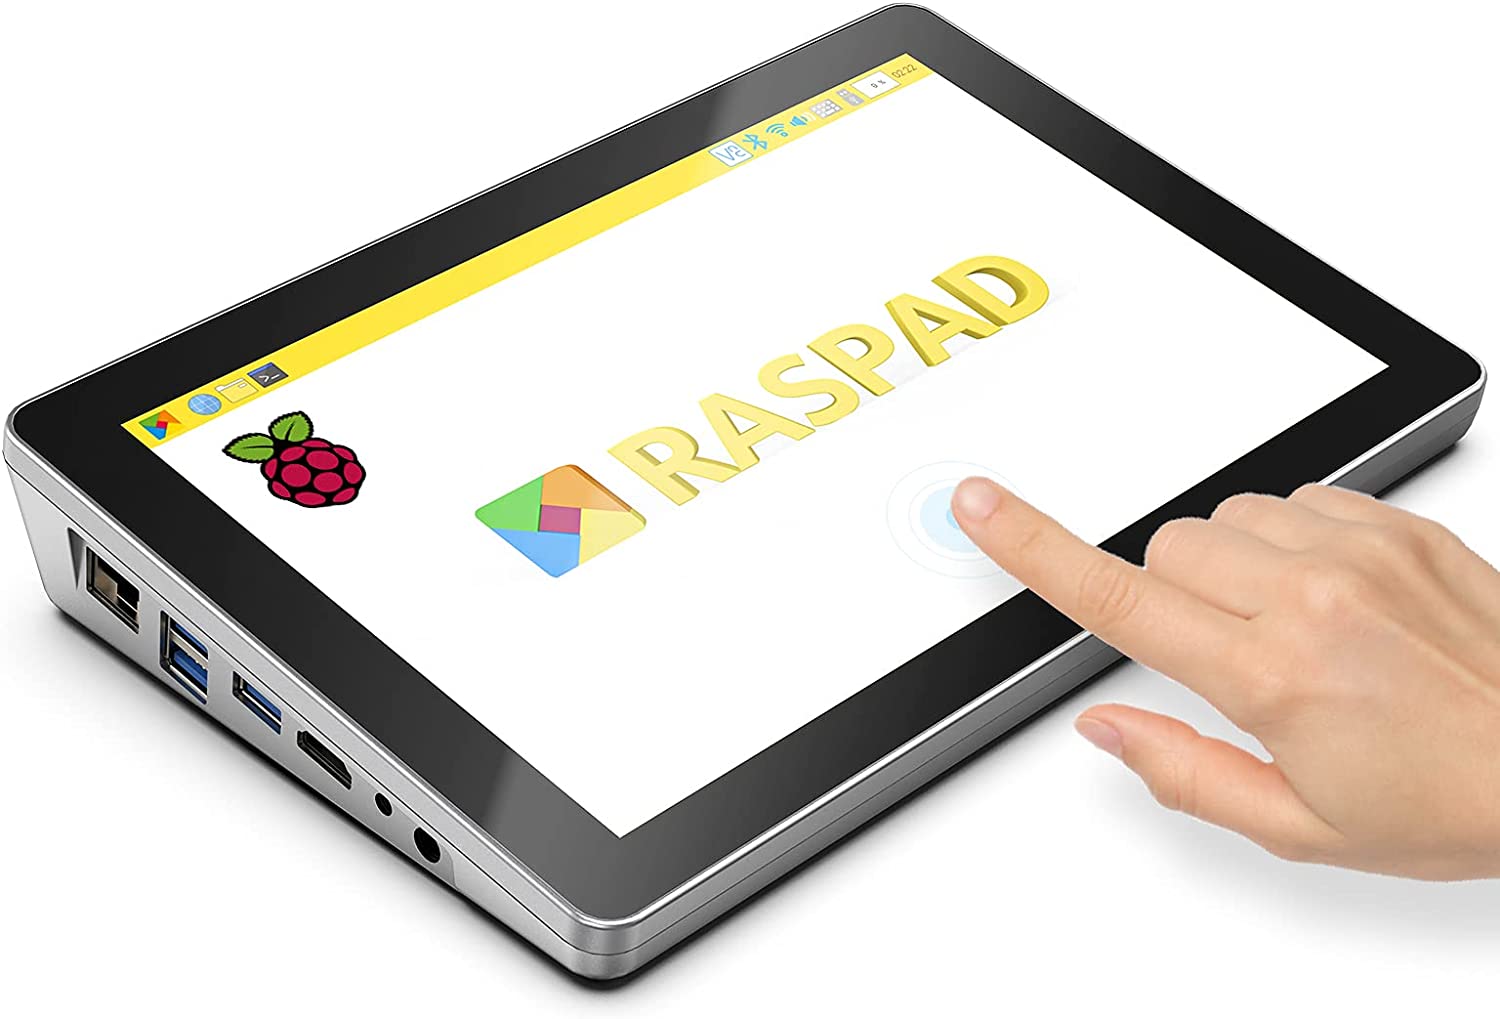 RasPad 3.0